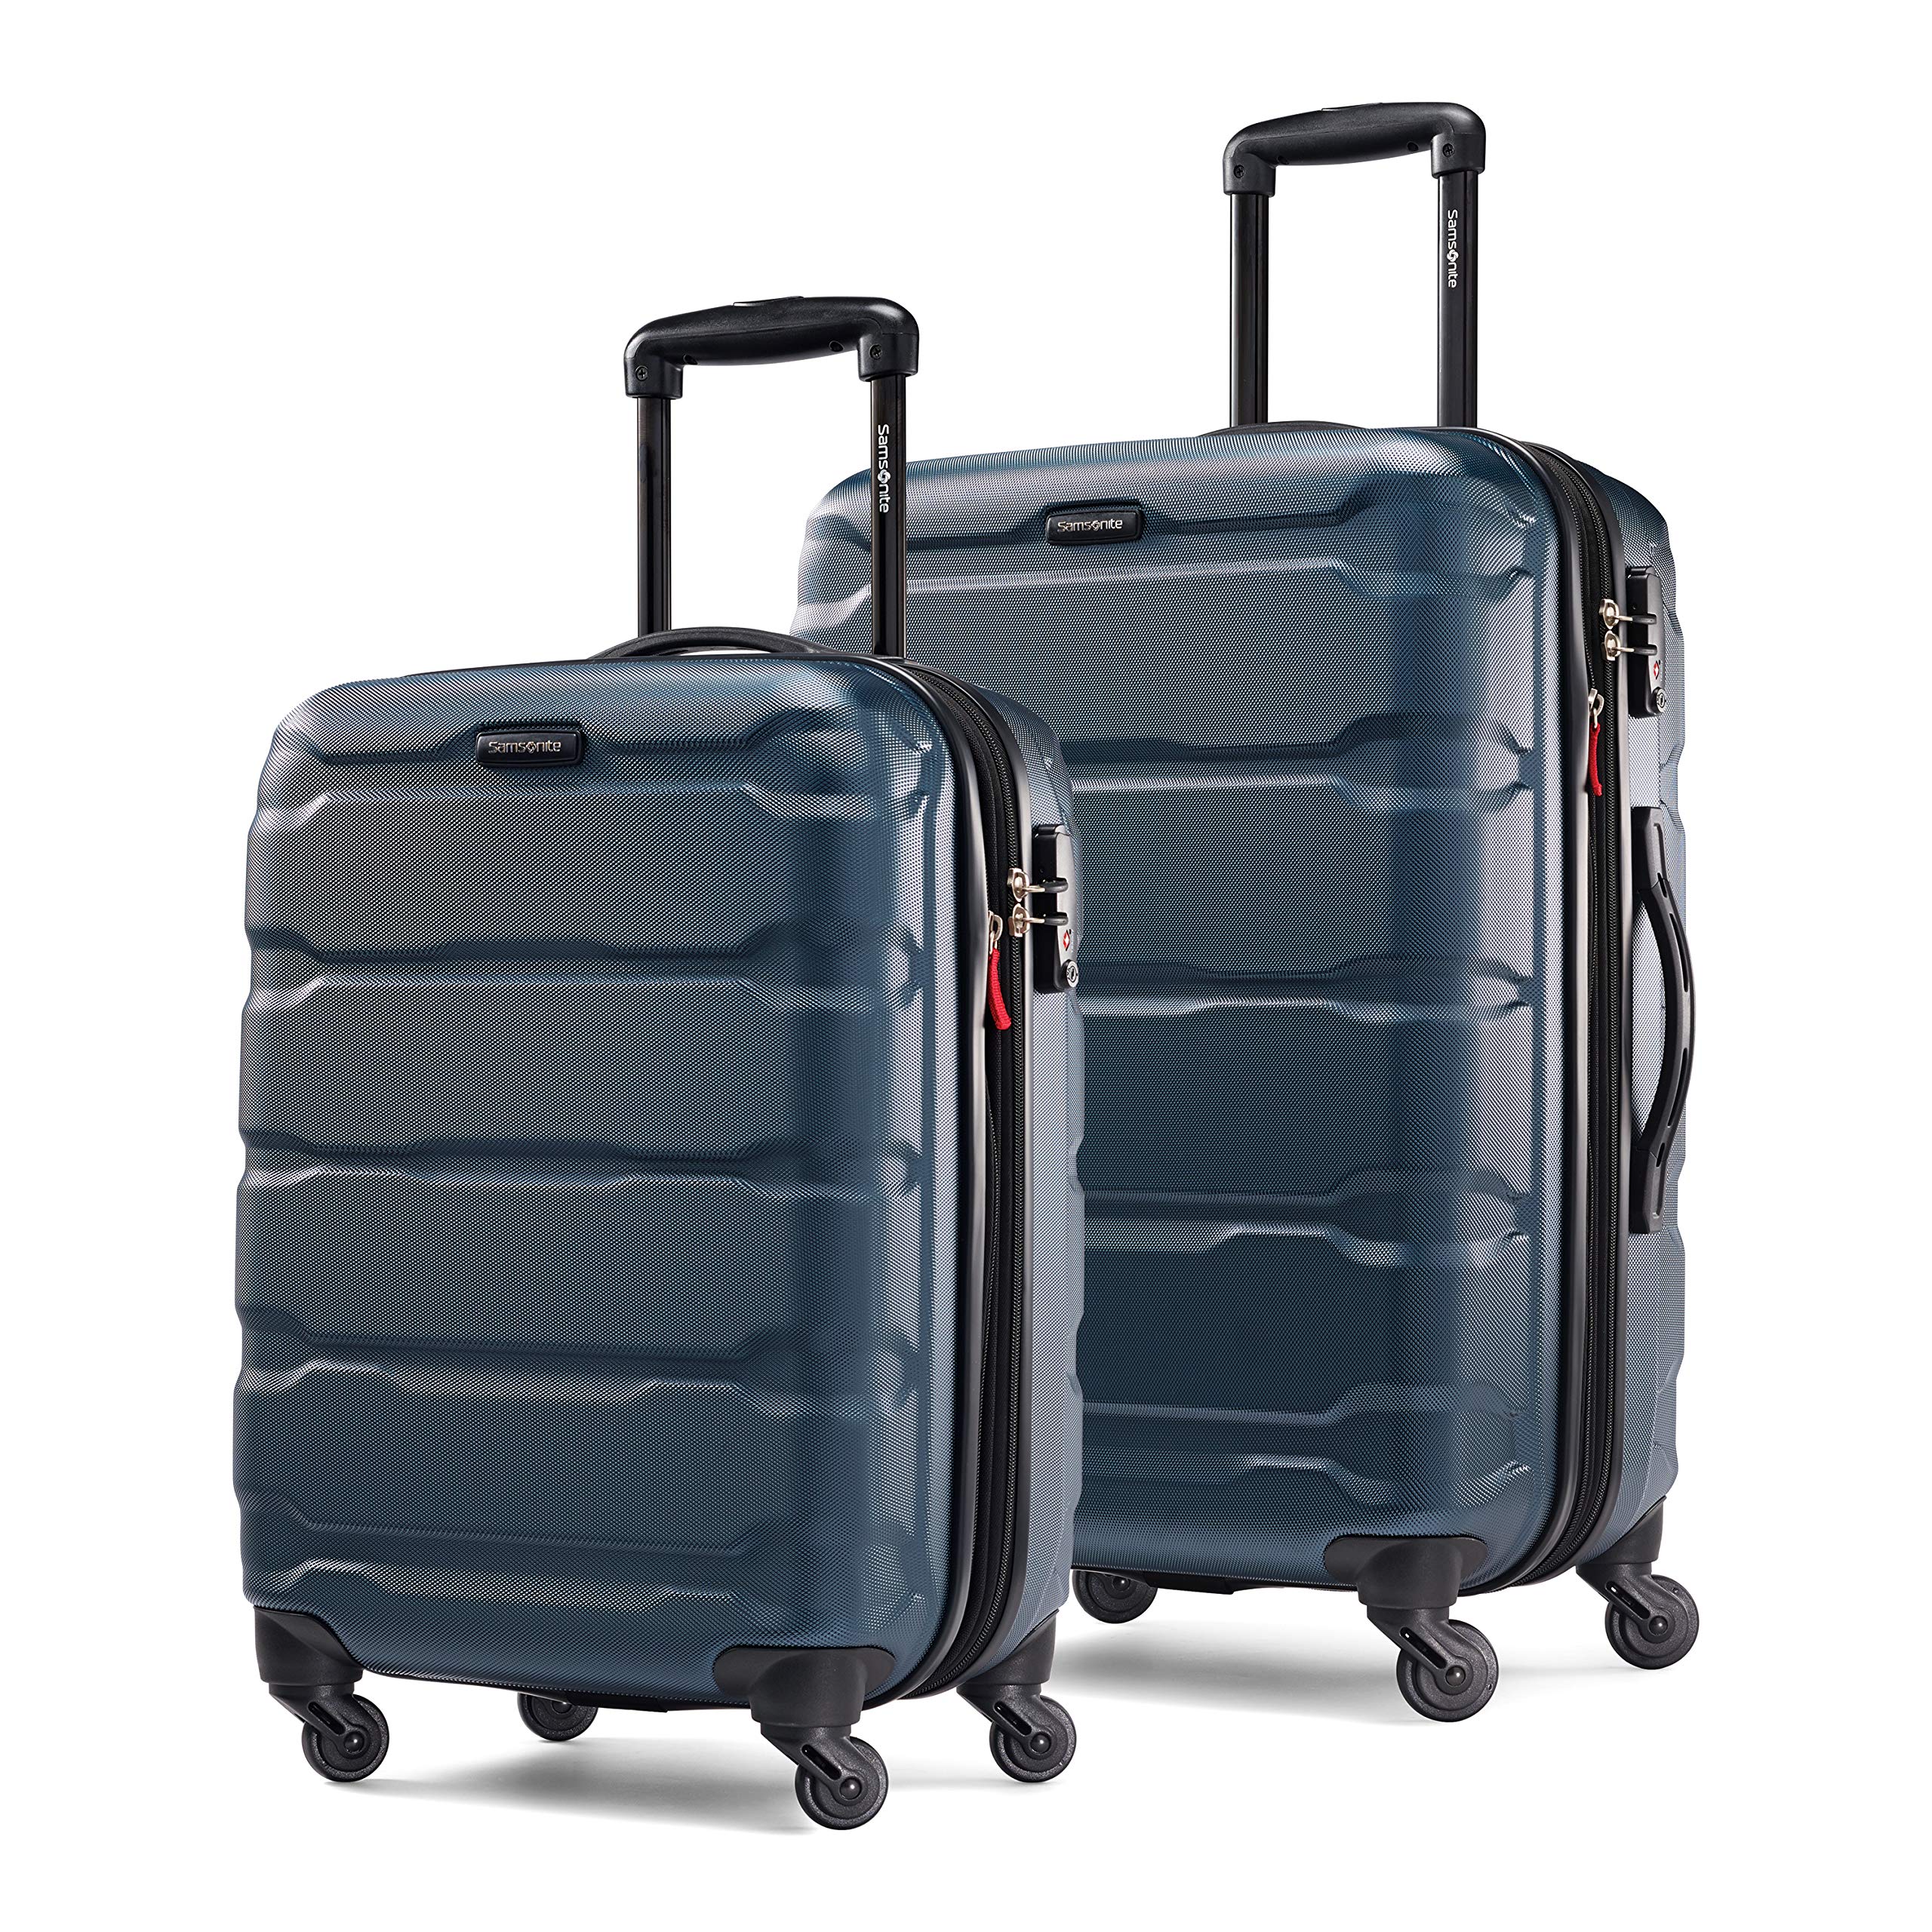 Samsonite + Omni PC Hardside Expandable Luggage, 2-Piece Set